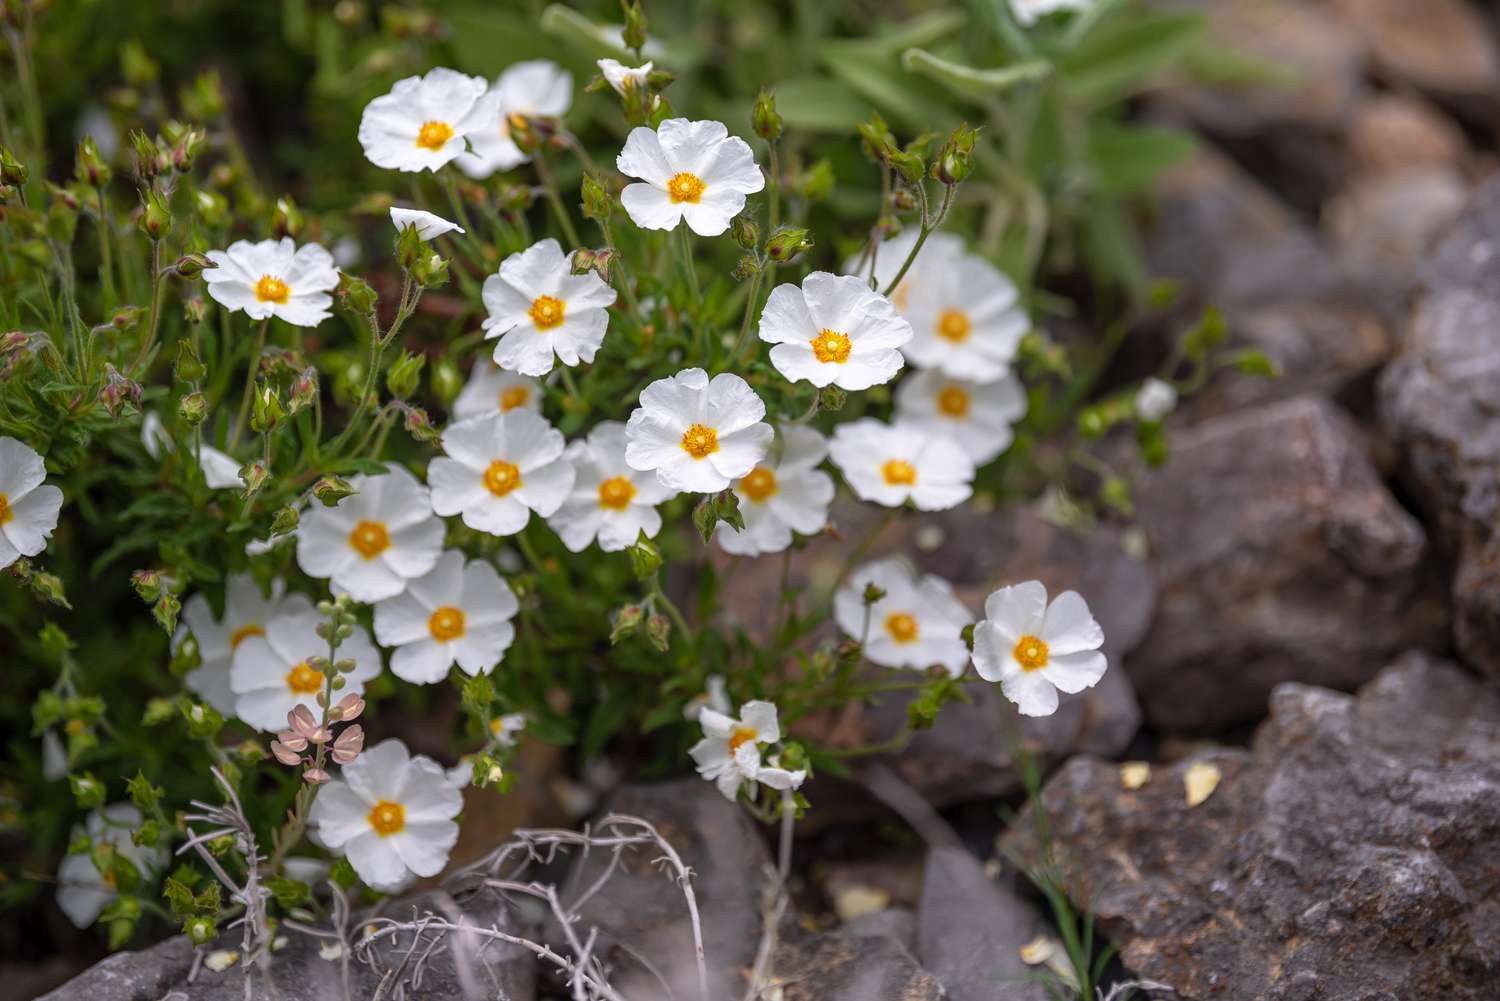 Arbuste de ciste avec petites fleurs blanches à centre jaune près de petits rochers